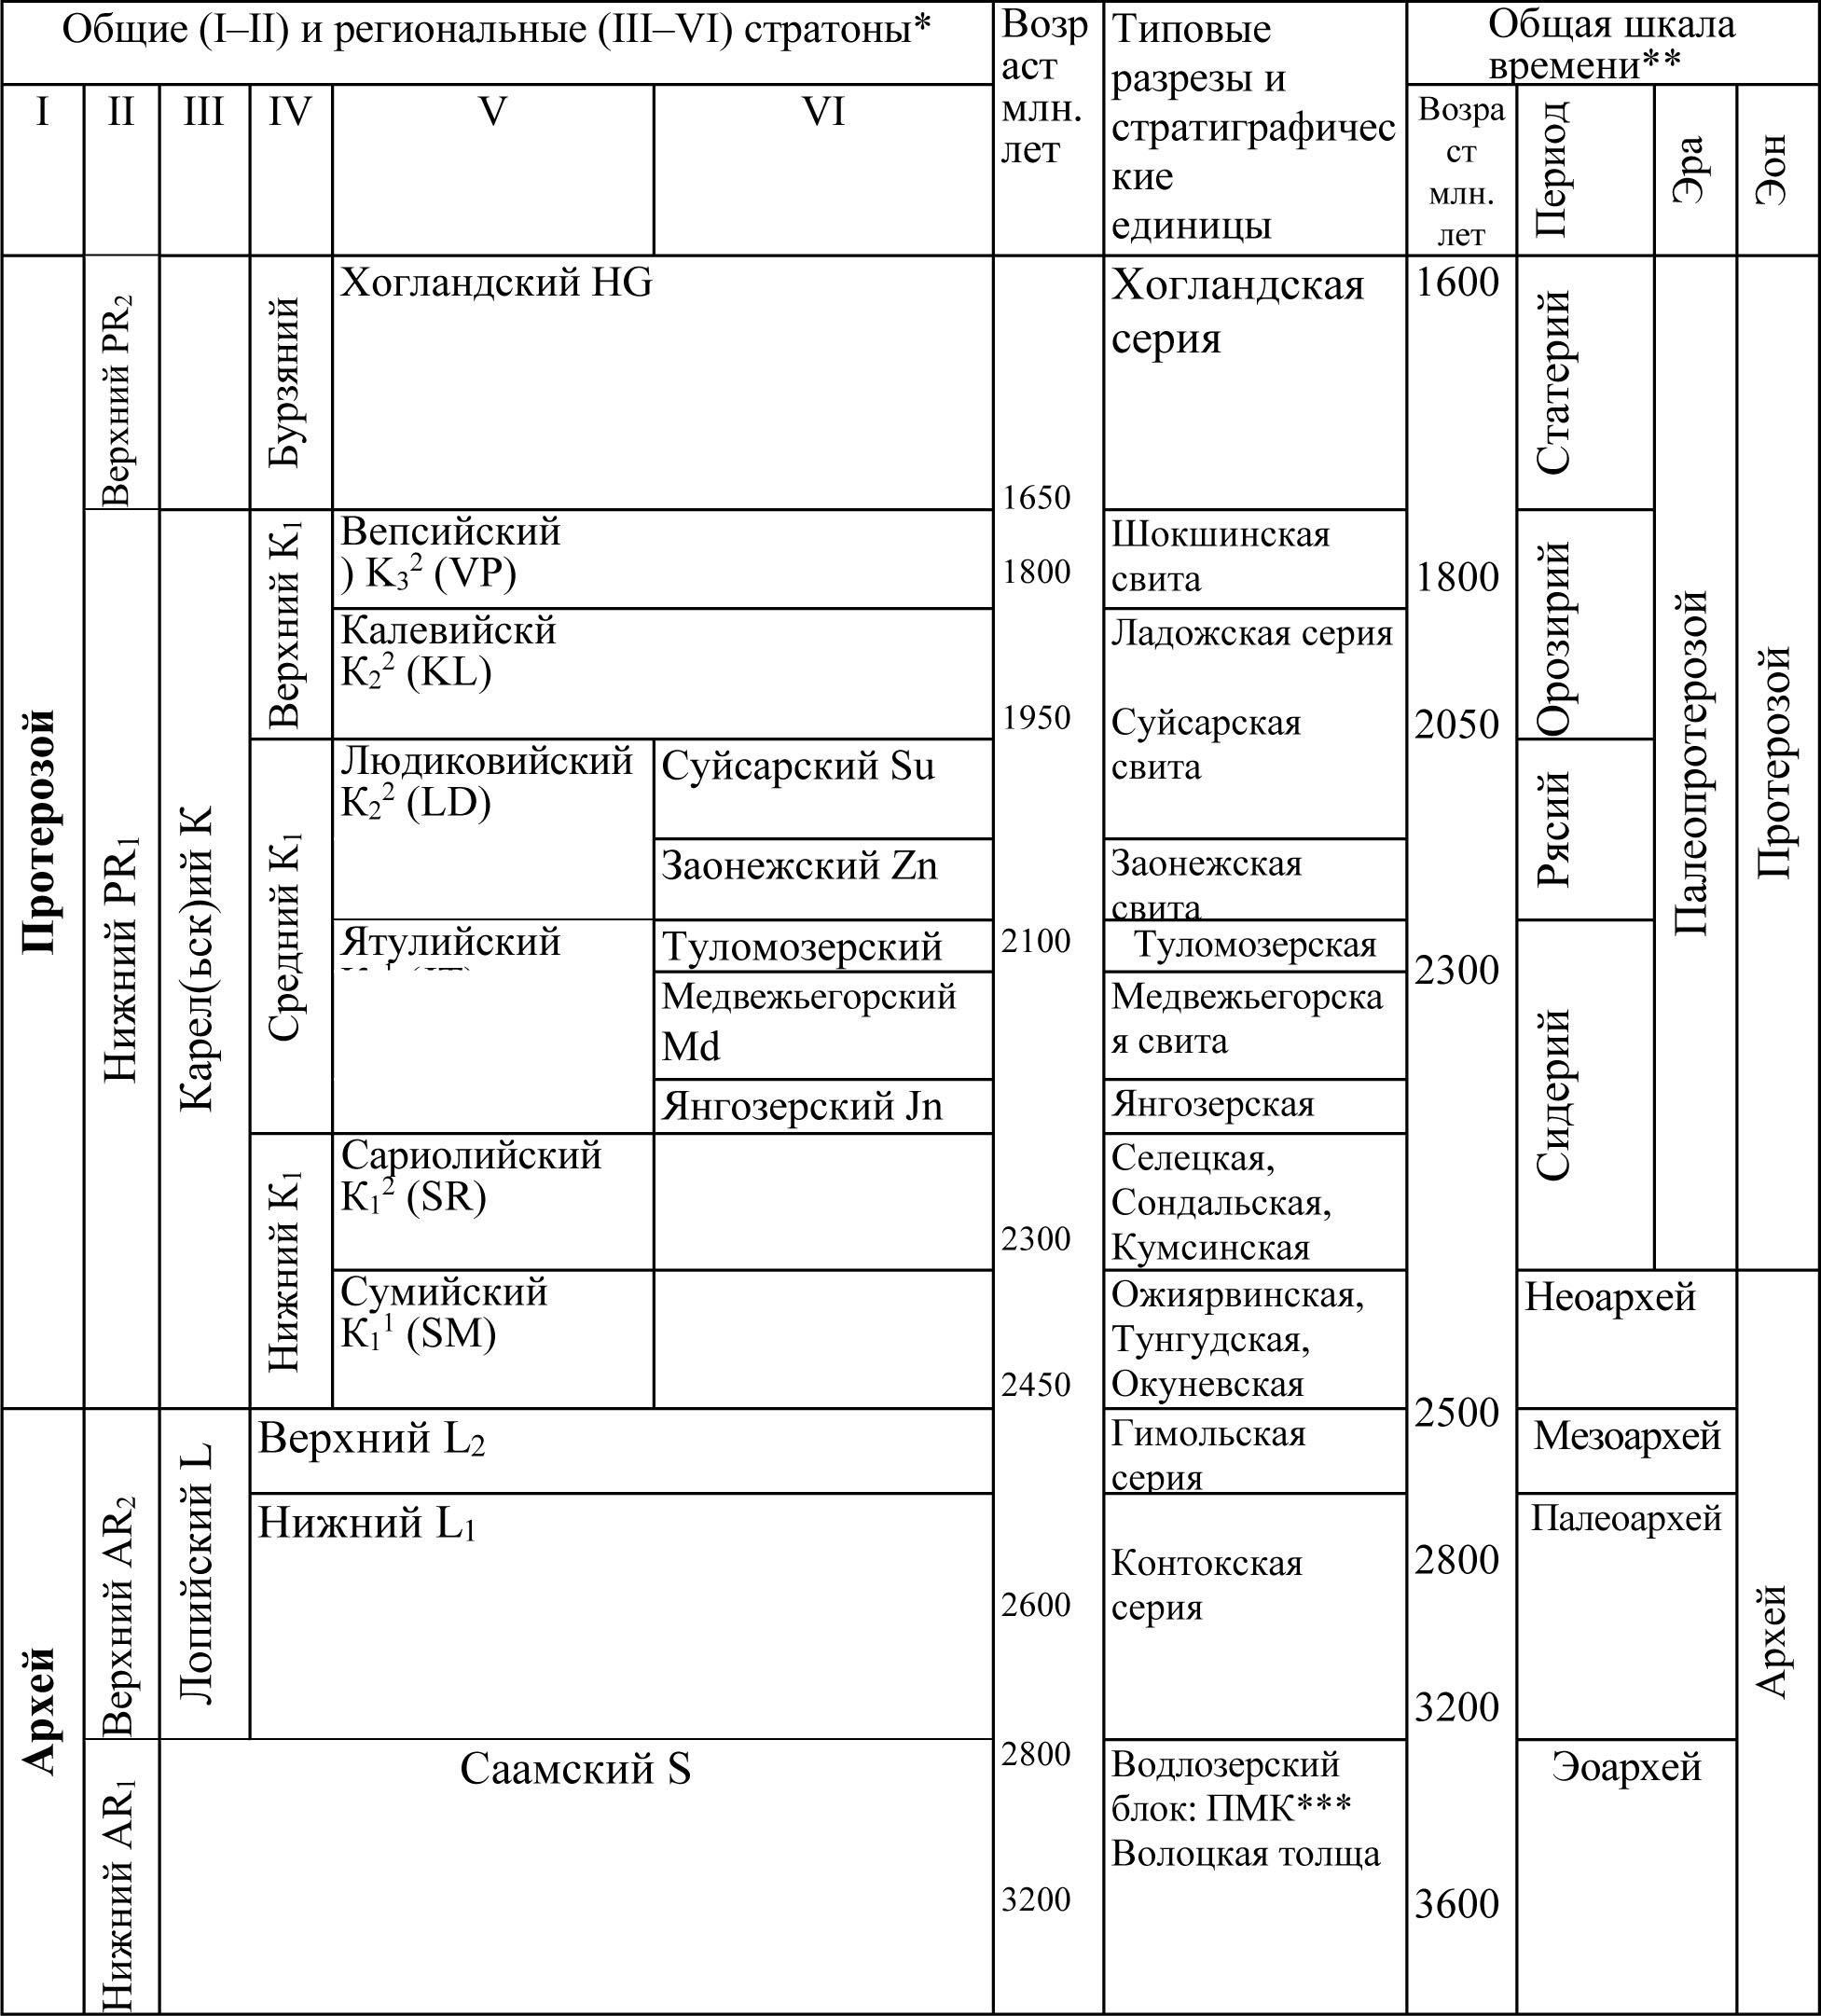 Корреляционная стратиграфическая схема нижнепротерозойских и архейских отложений Карело-Кольского региона. (Негруца В.З., 2011)